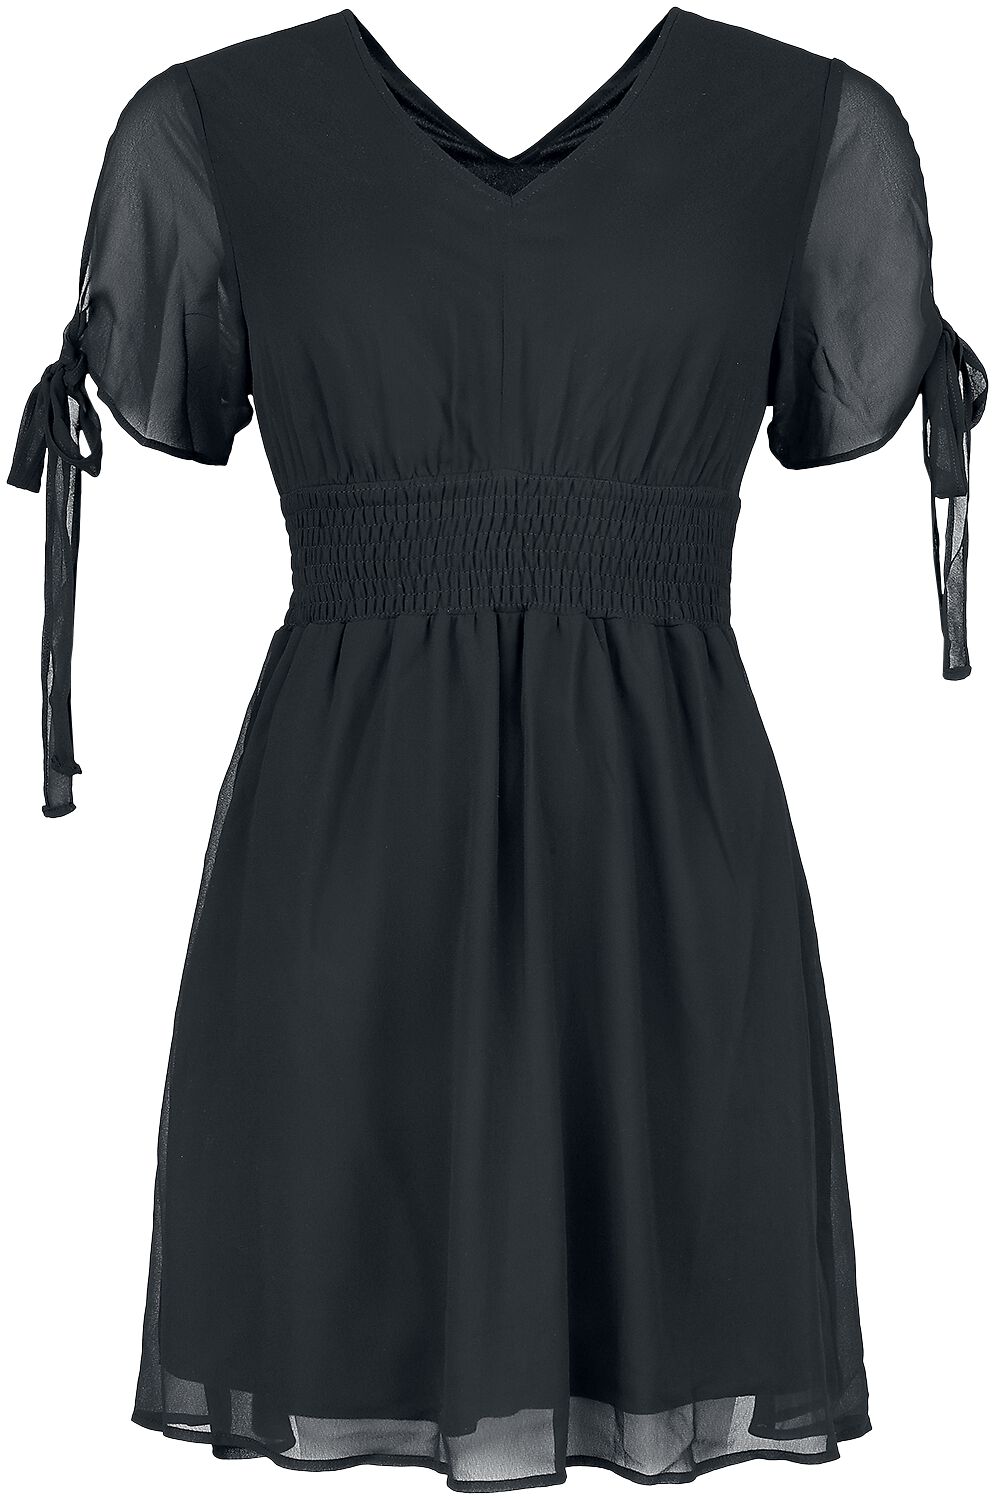 Innocent - Gothic Kurzes Kleid - Carme Dress - S bis 4XL - für Damen - Größe XL - schwarz